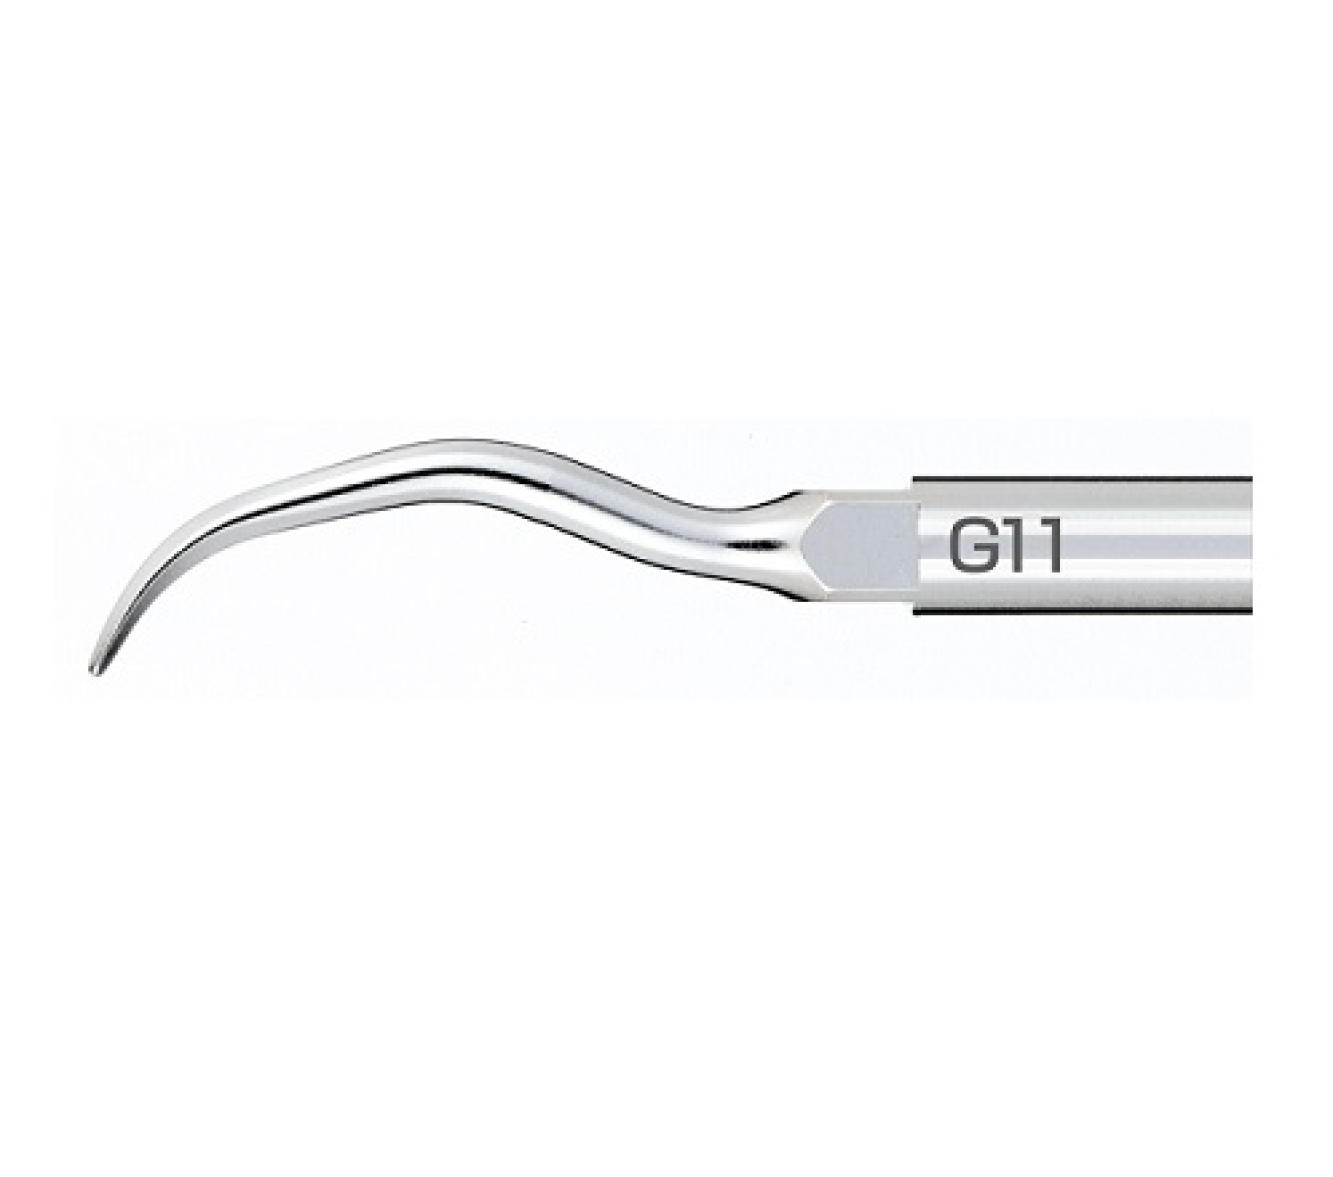 G11 Универсальная стоматологическая насадка к скалеру Varios, для удаления камня с большой поверхности, NSK (Япония)